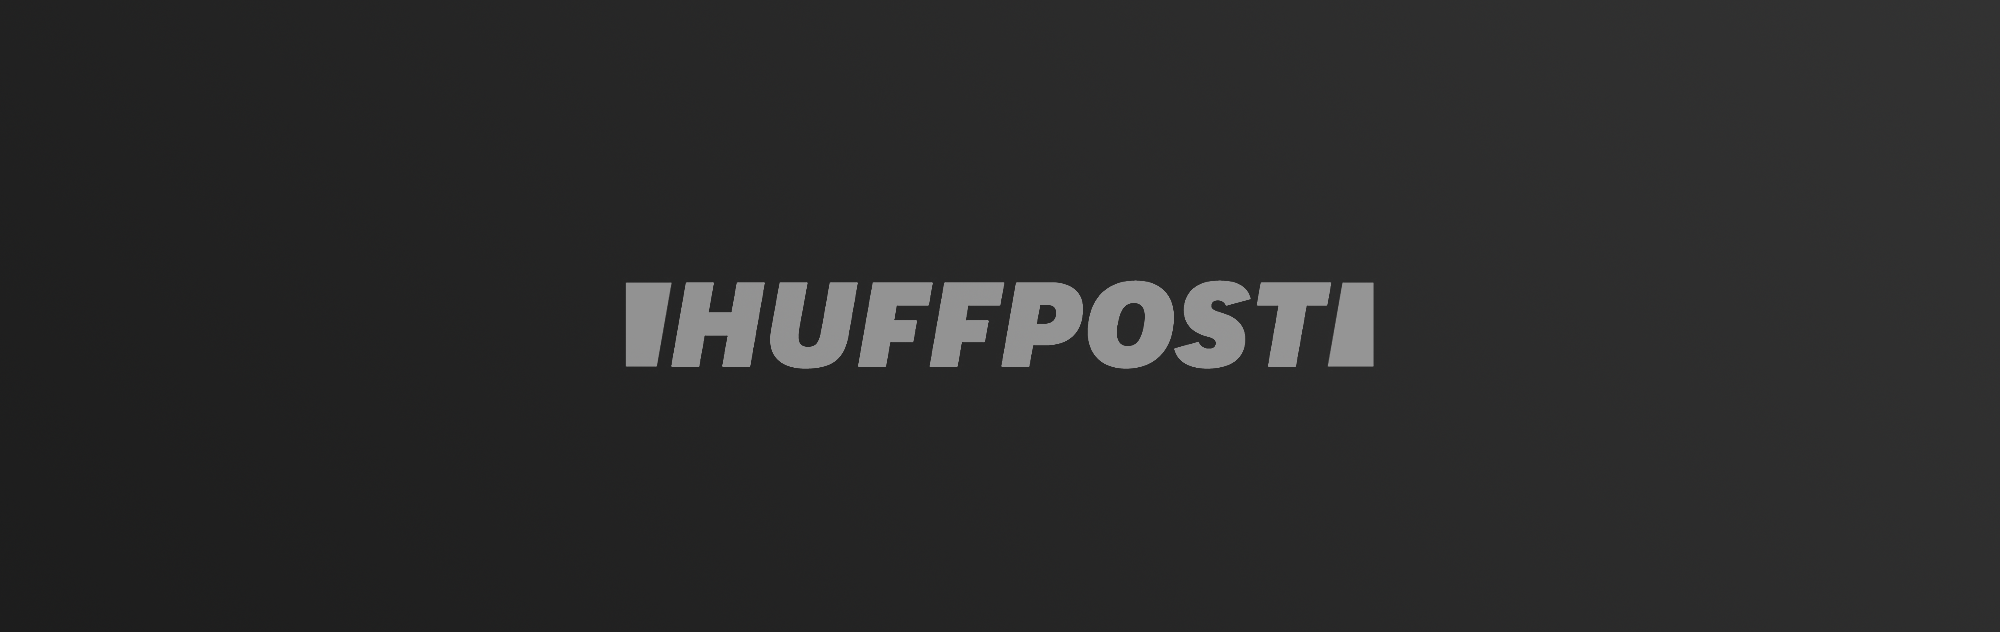 Huffington Post logo on dark gradient background